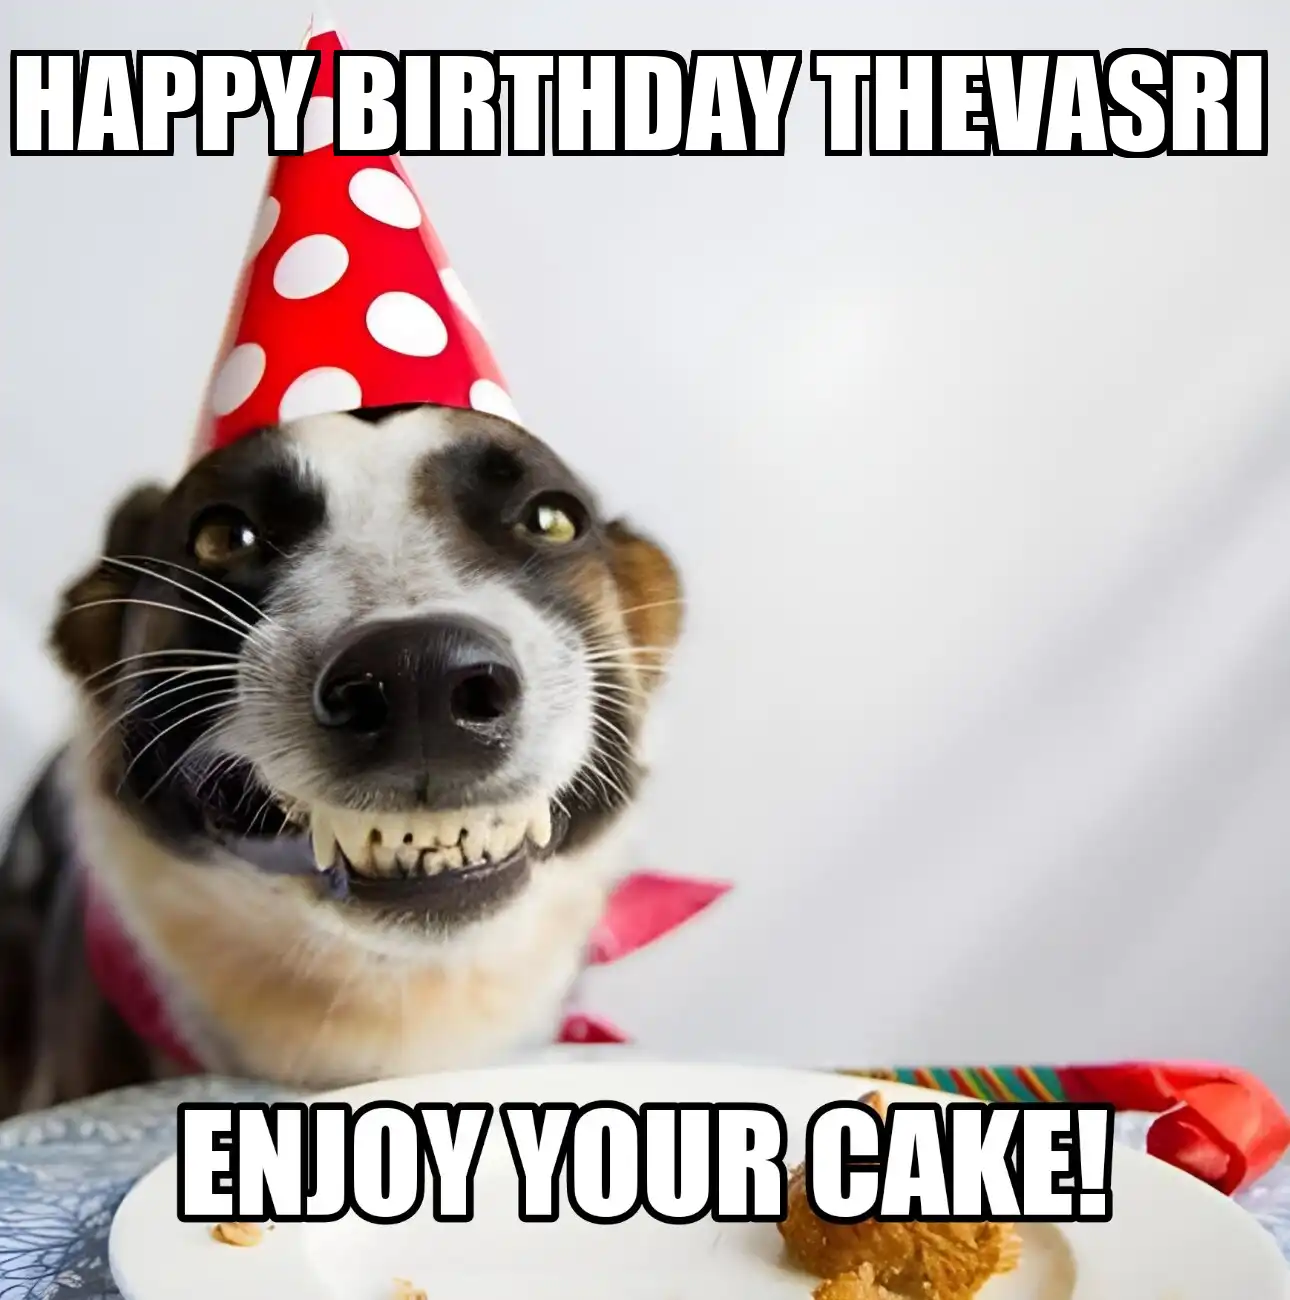 Happy Birthday Thevasri Enjoy Your Cake Dog Meme